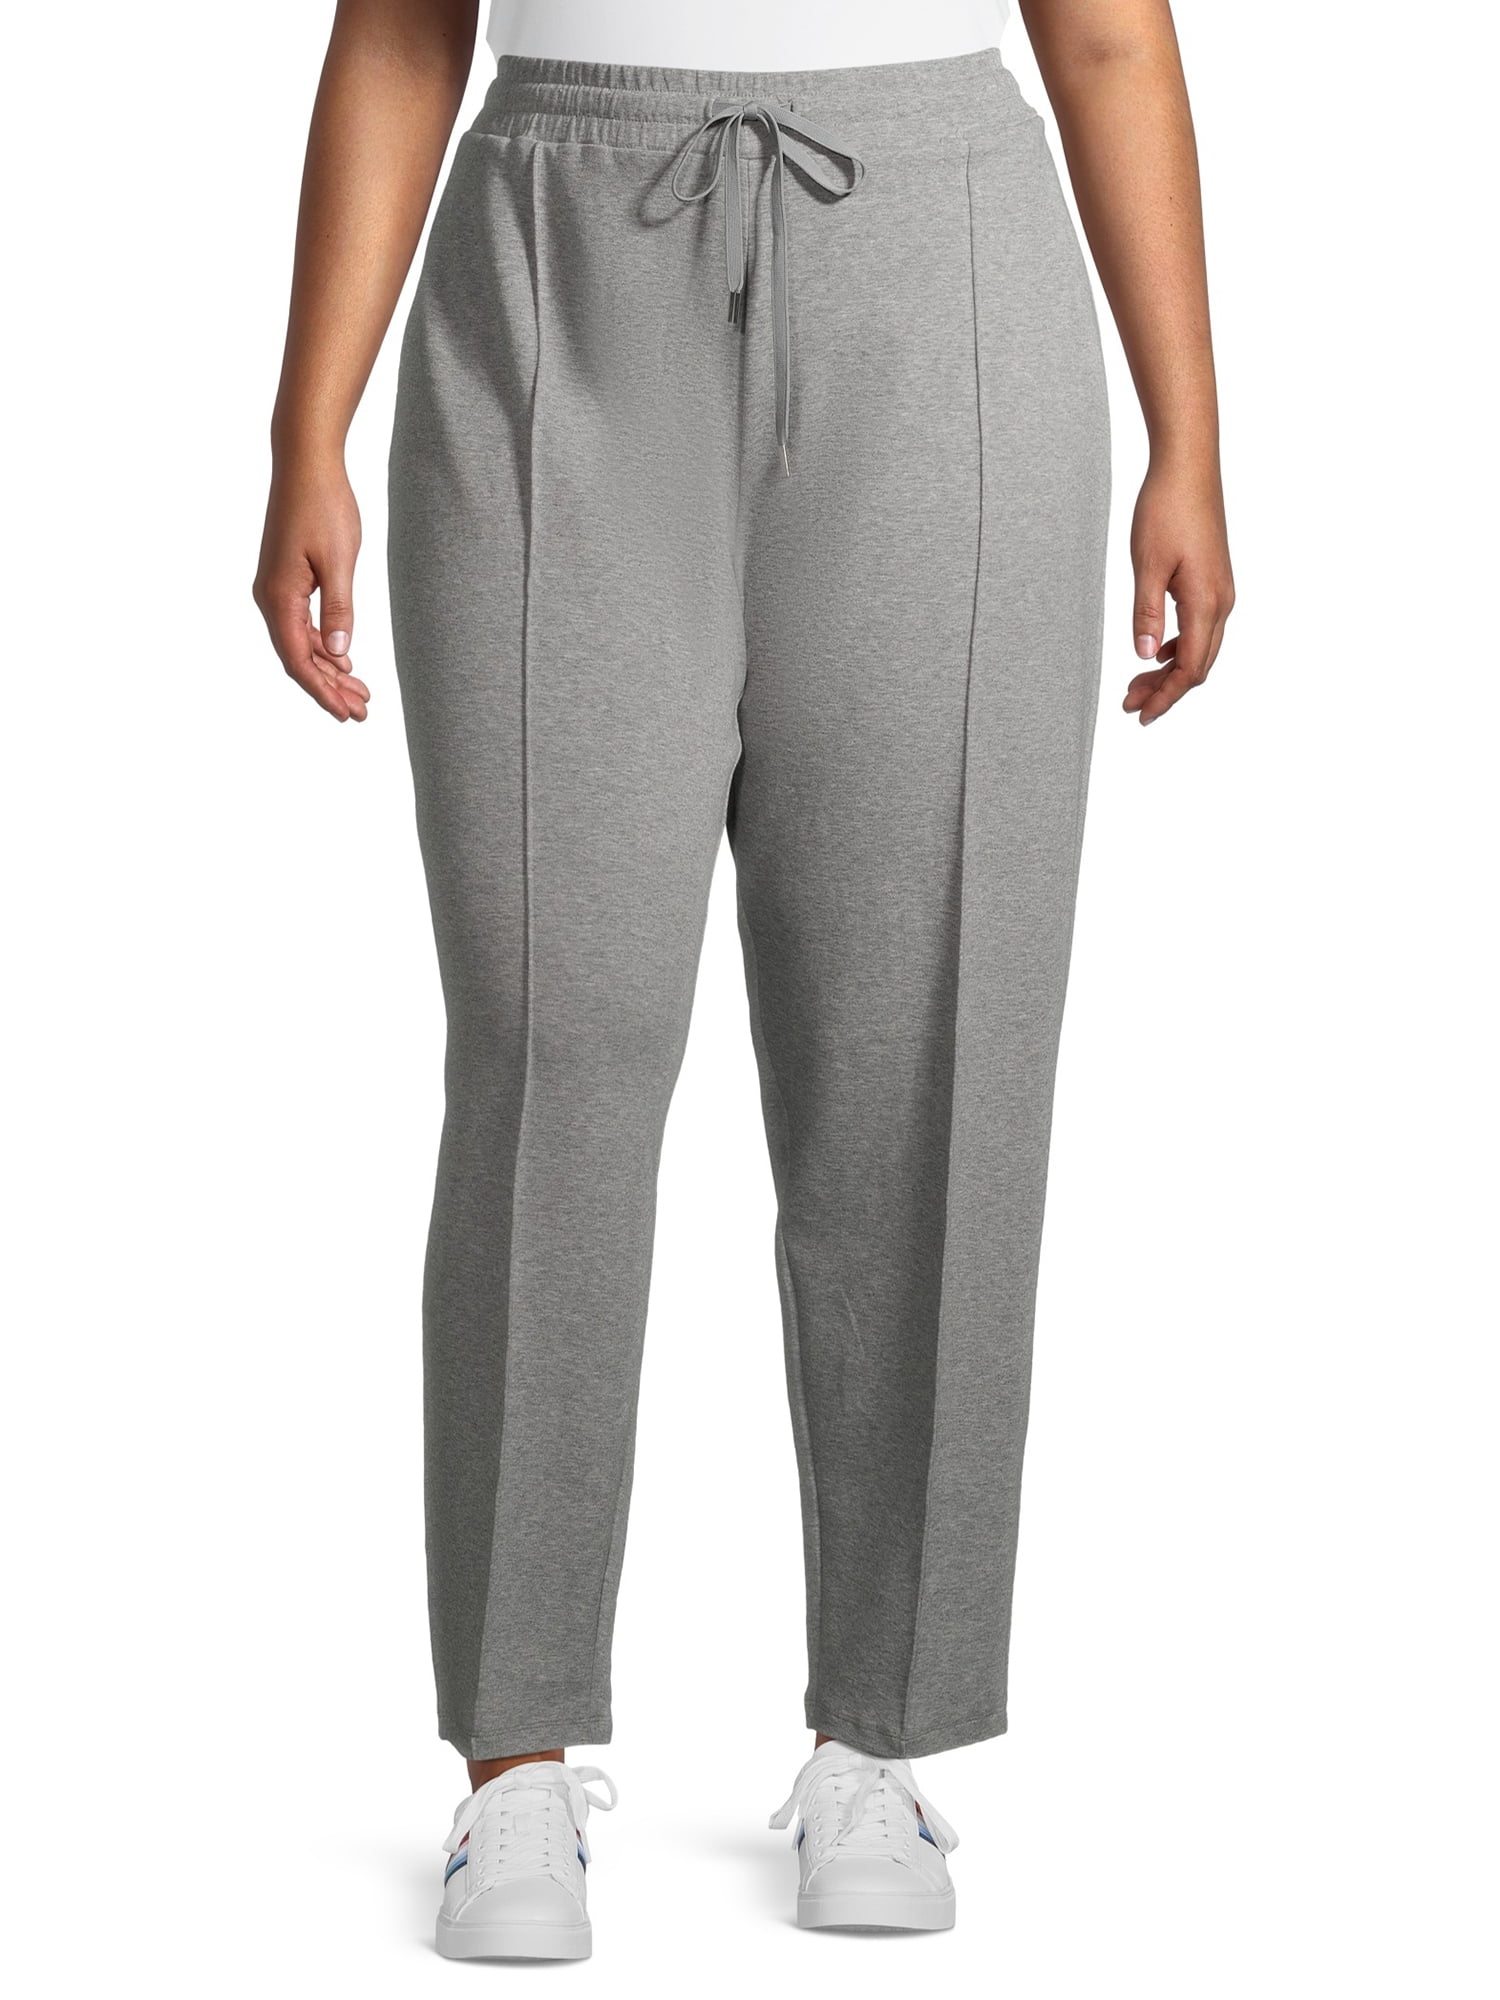 Terra & Sky Women's Plus Size Pintuck Knit Pants 